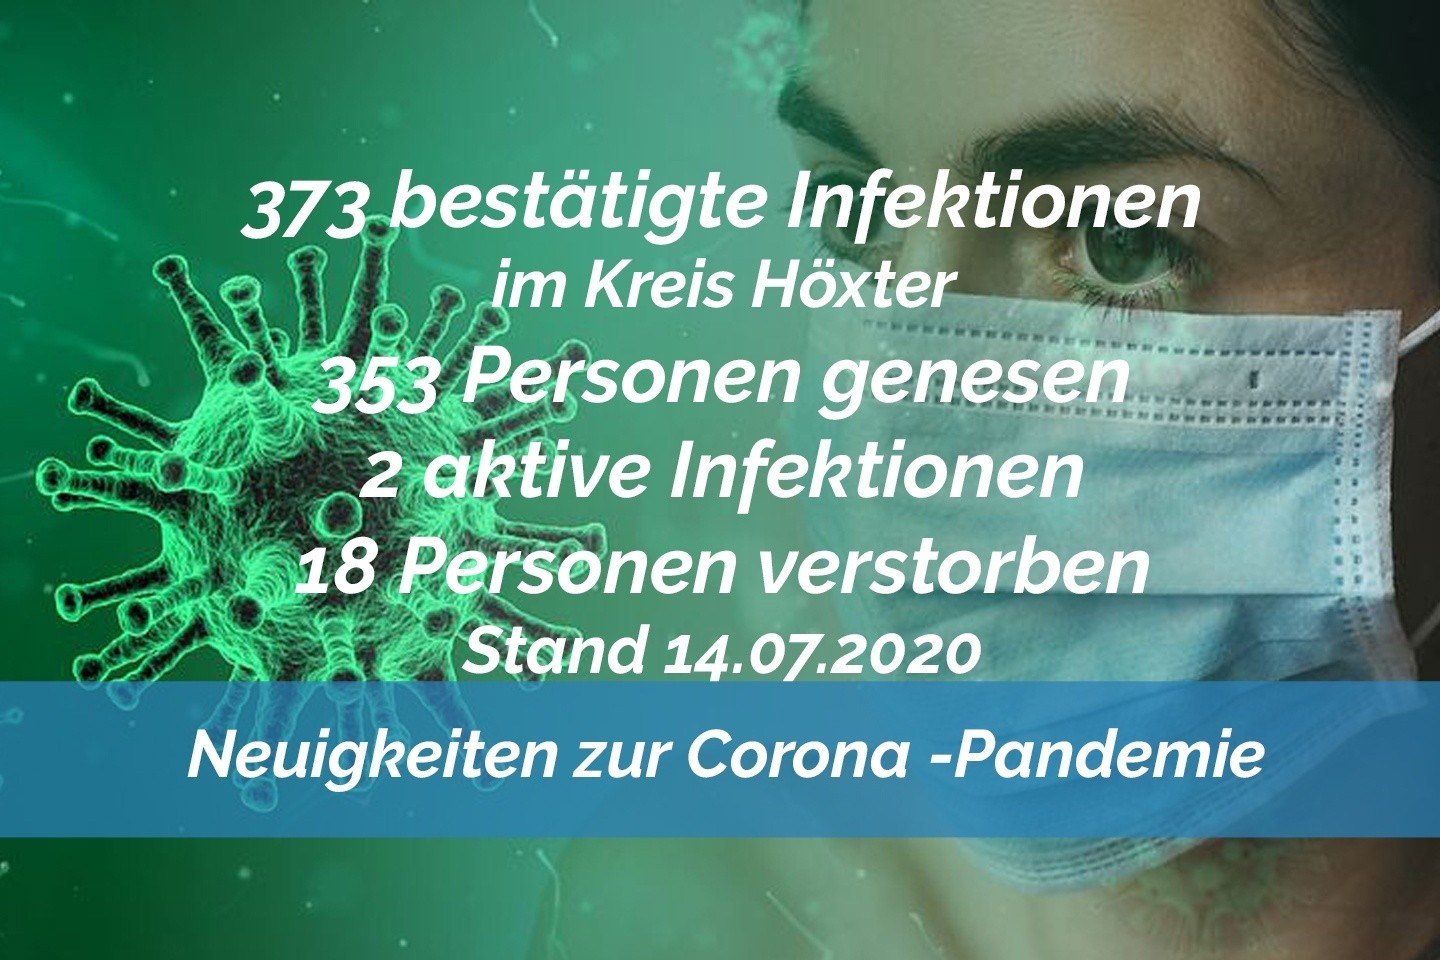 Update vom 14. Juli: 373 bestätigte Infektionen mit dem neuen Coronavirus im Kreis Höxter